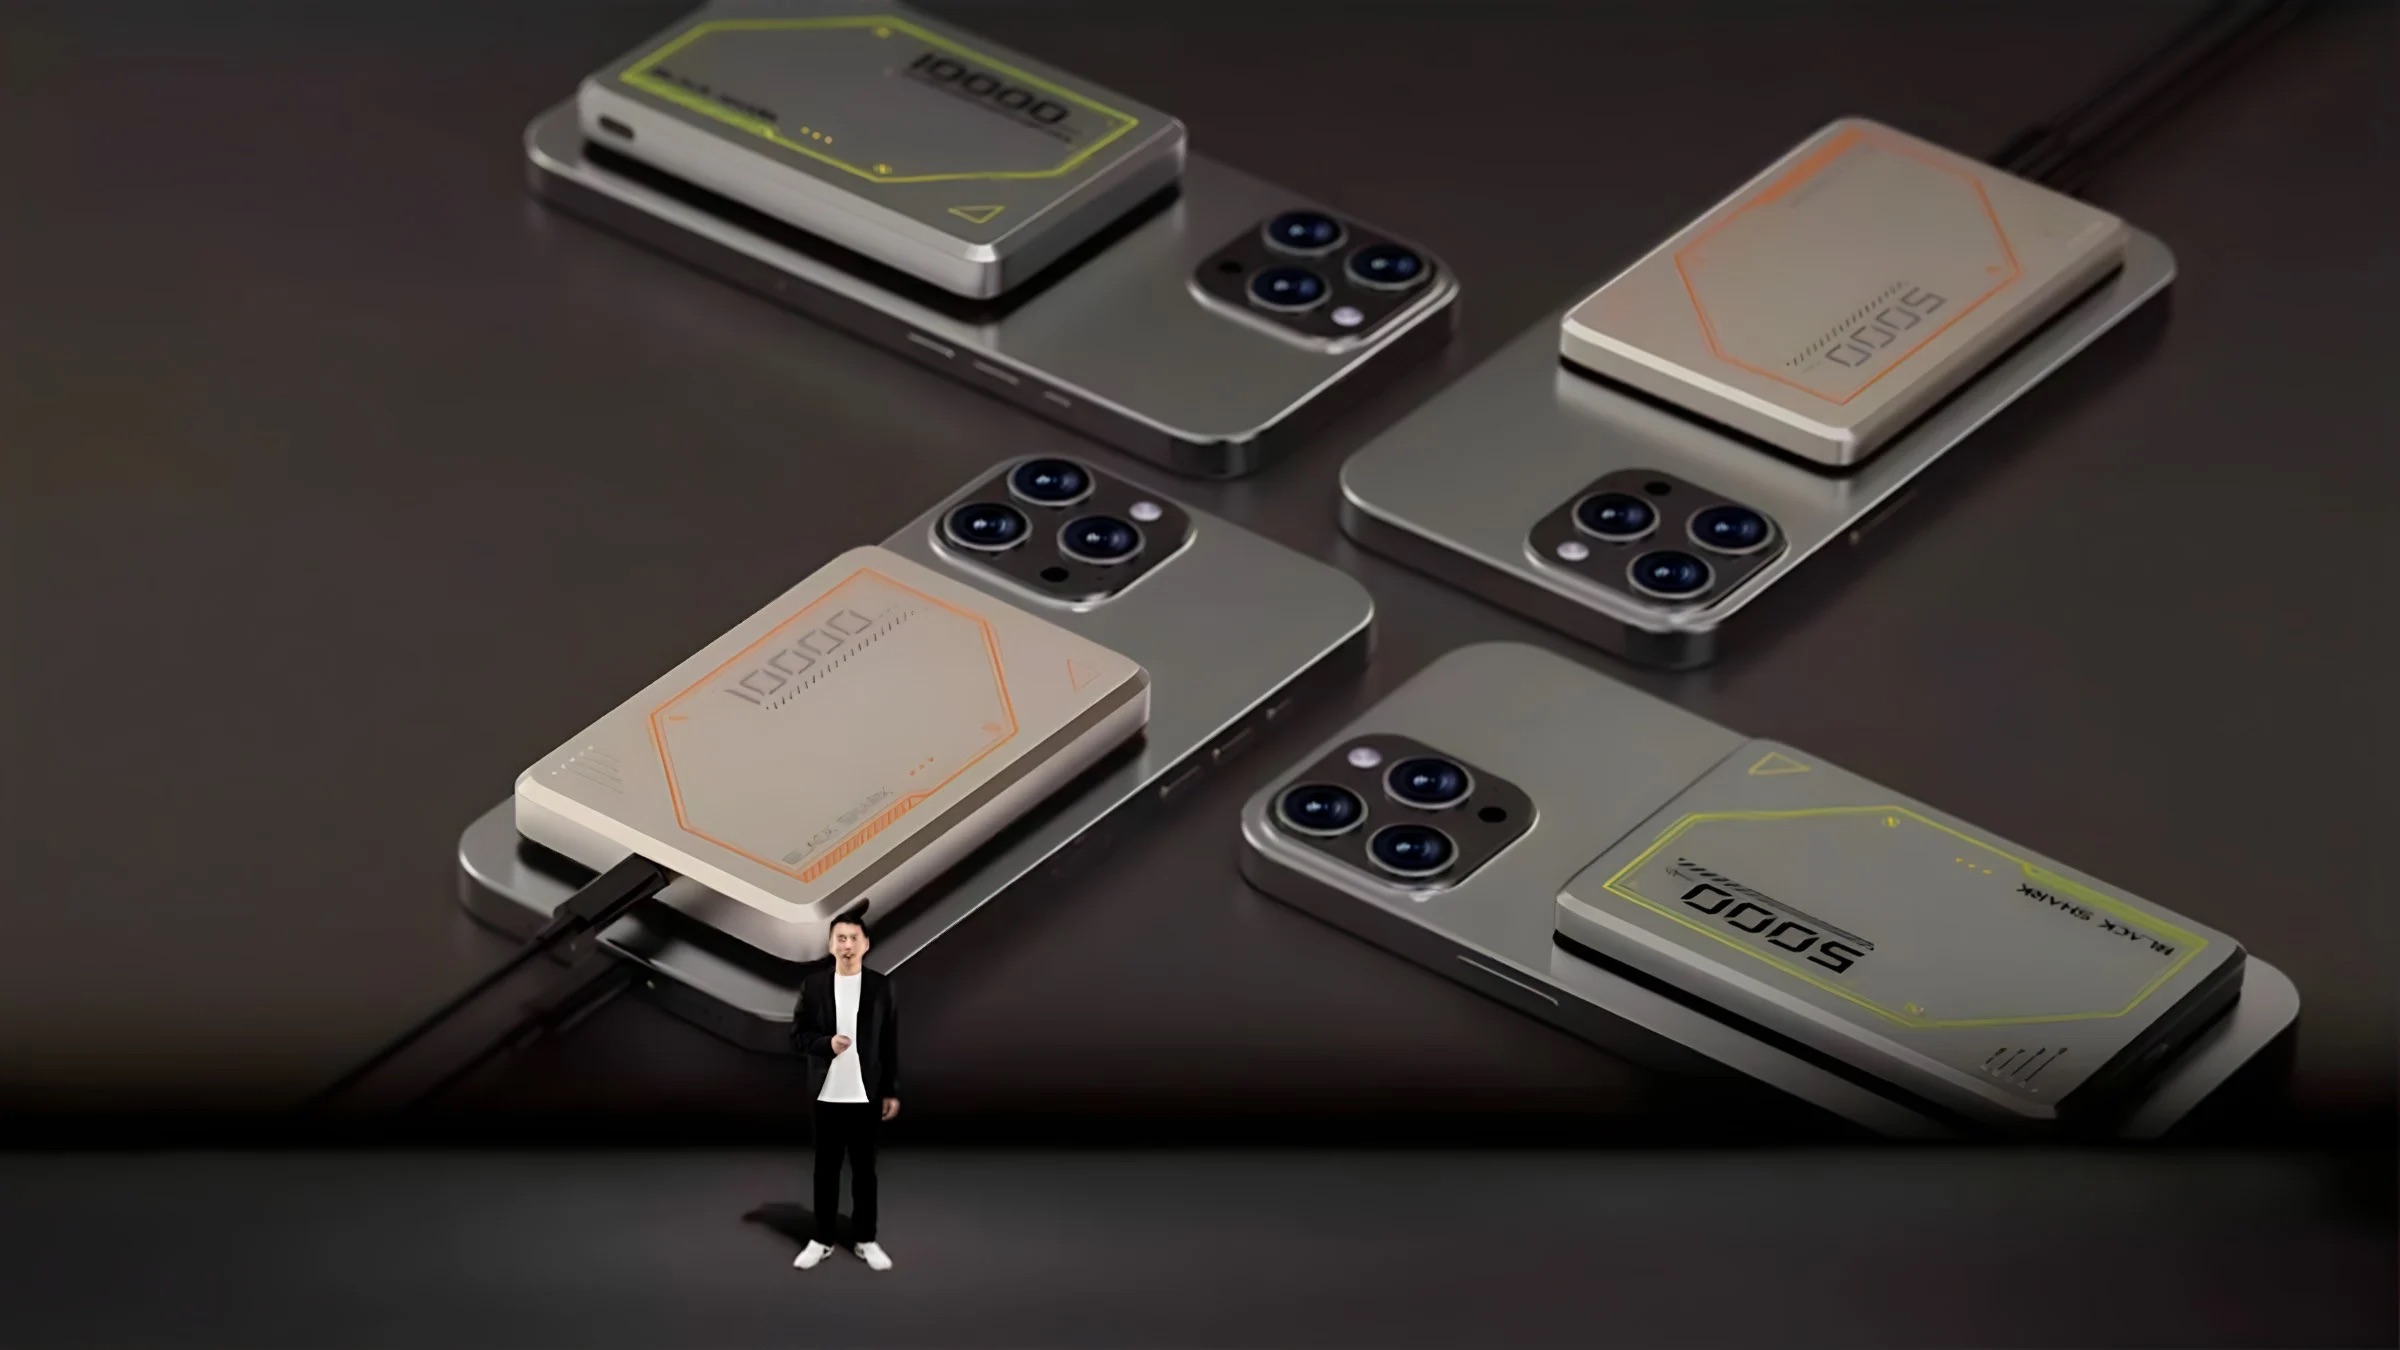 Xiaomi представила идеальный геймерский пауэрбанк для iPhone